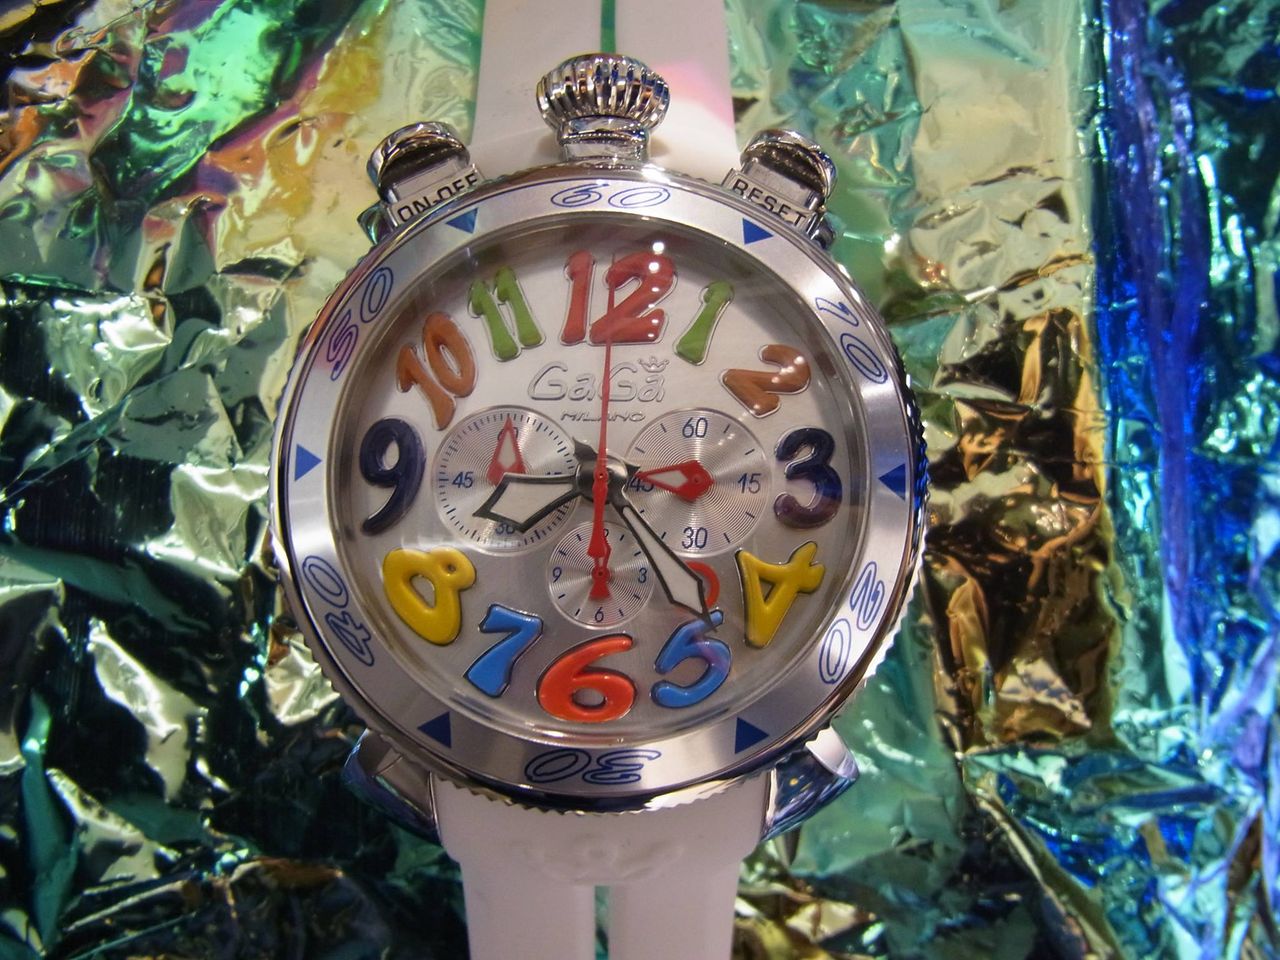 【新発売】 ディーゼル 時計 メンズ 腕時計 の商品が簡単に探せます